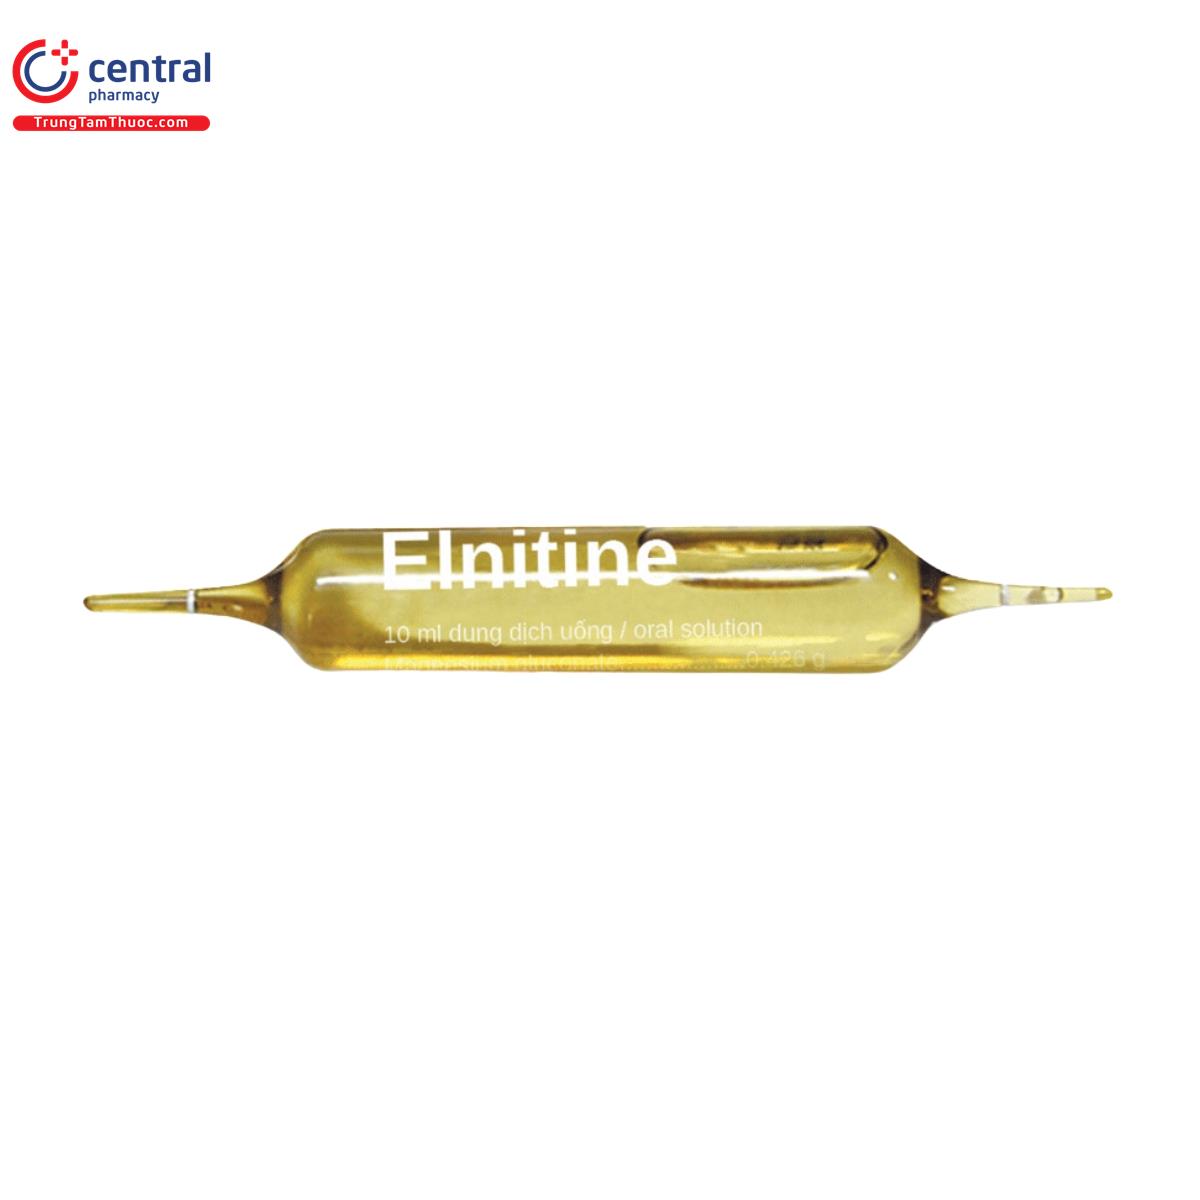 elnitine 6 I3286